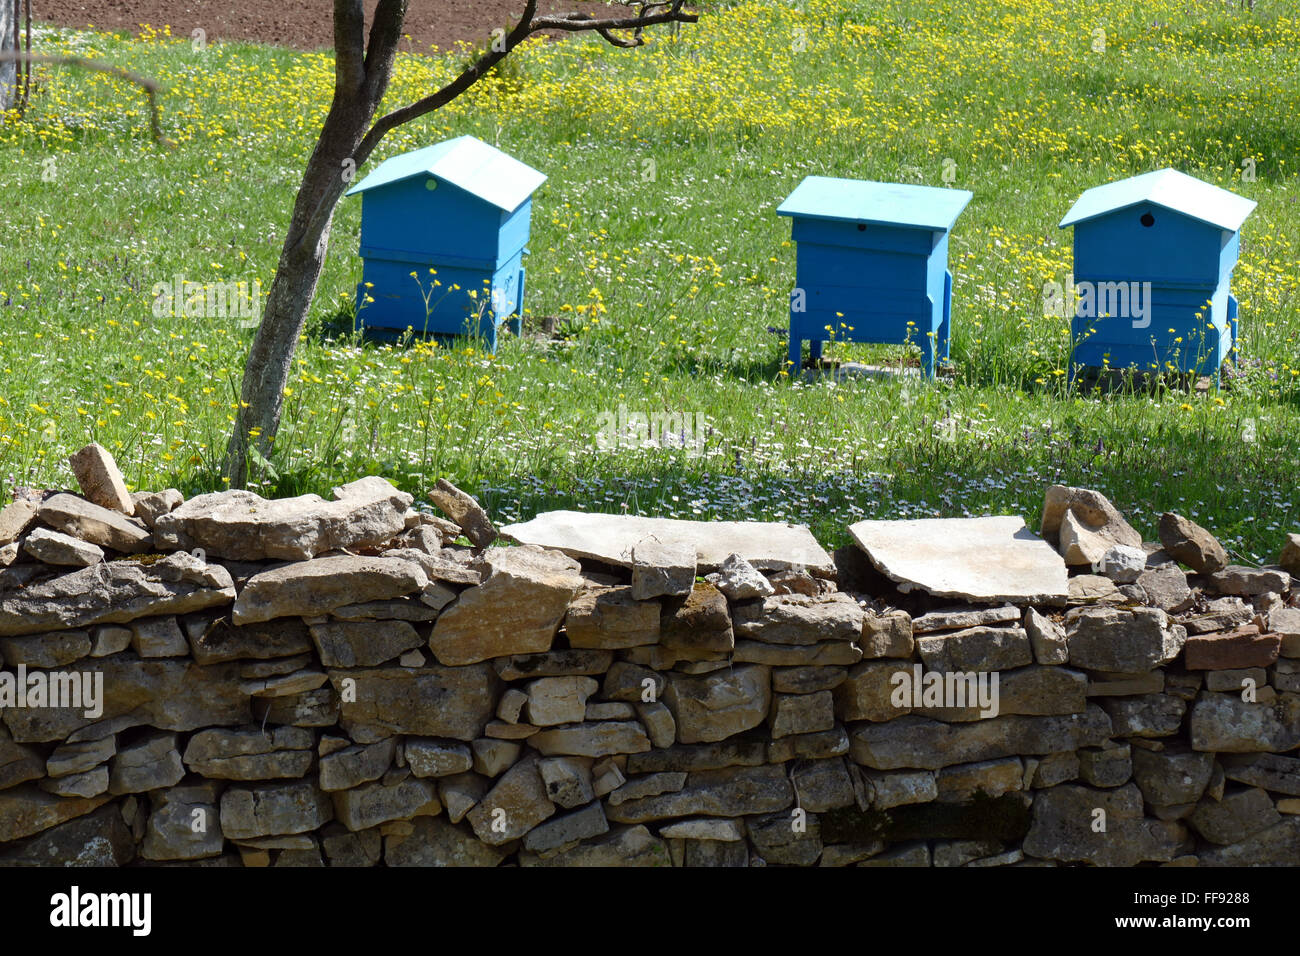 Jardin de printemps avec des ruches. Banque D'Images